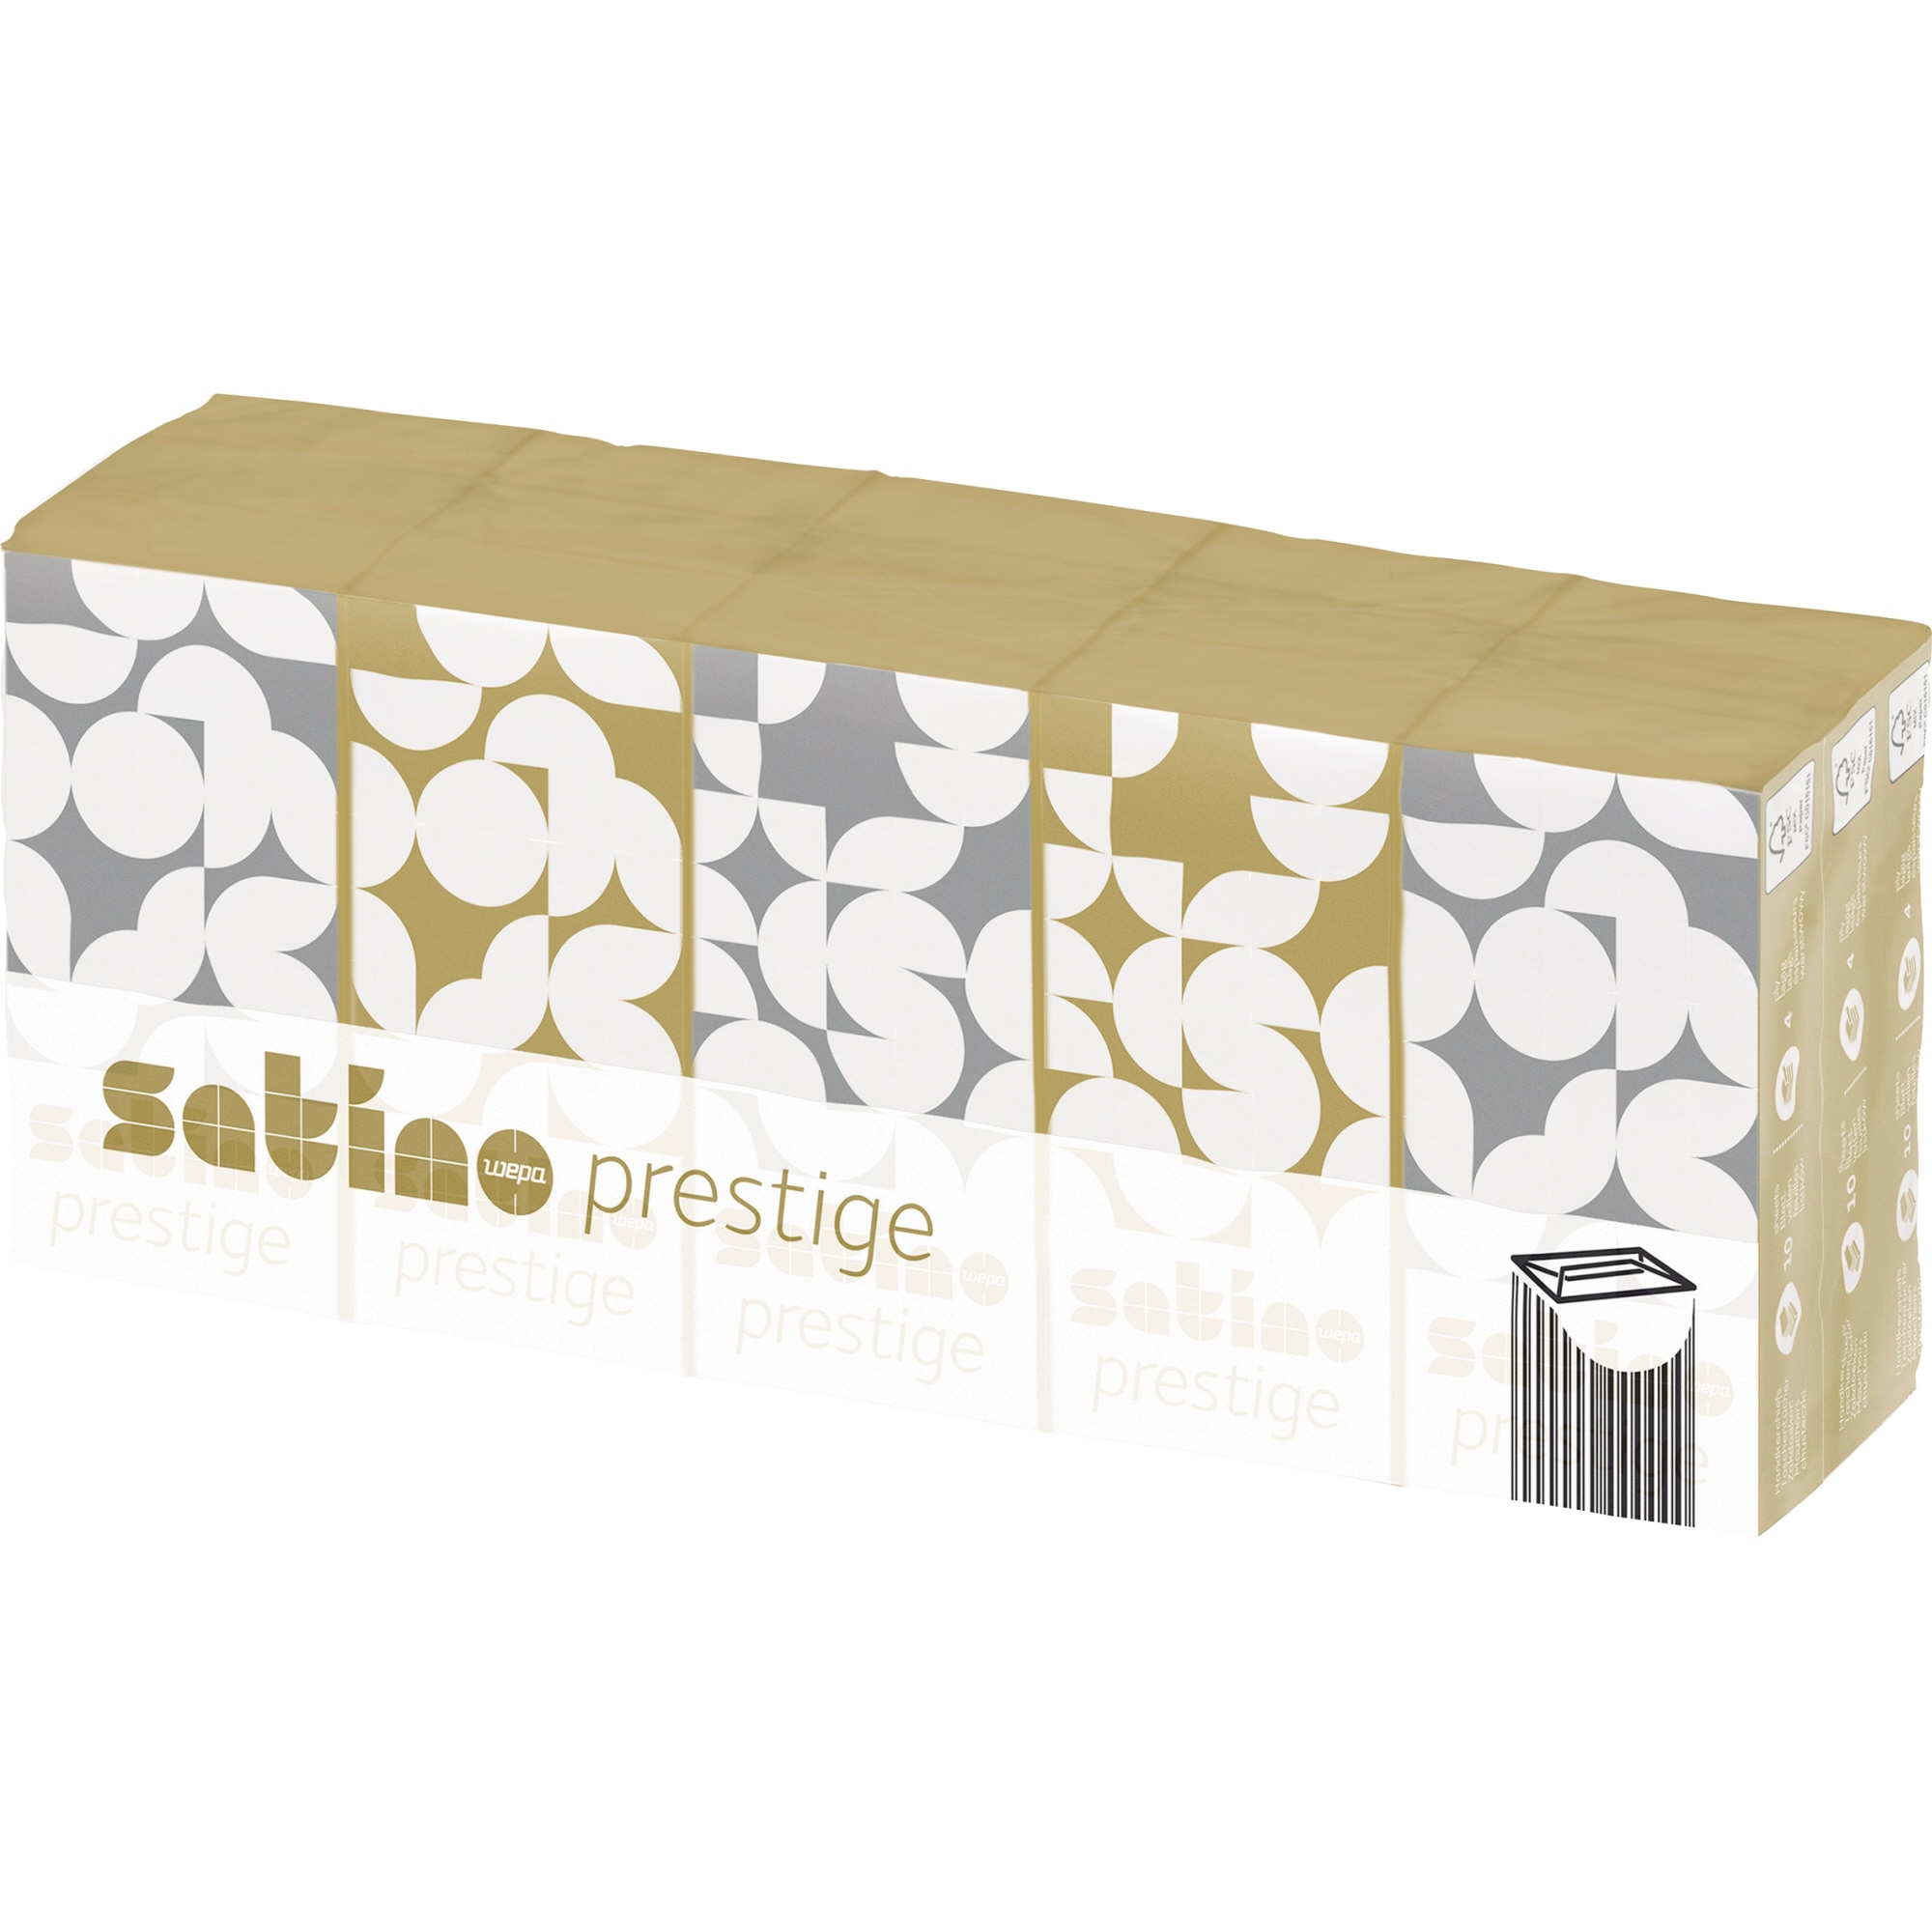 Satino Papiertaschentuch Prestige